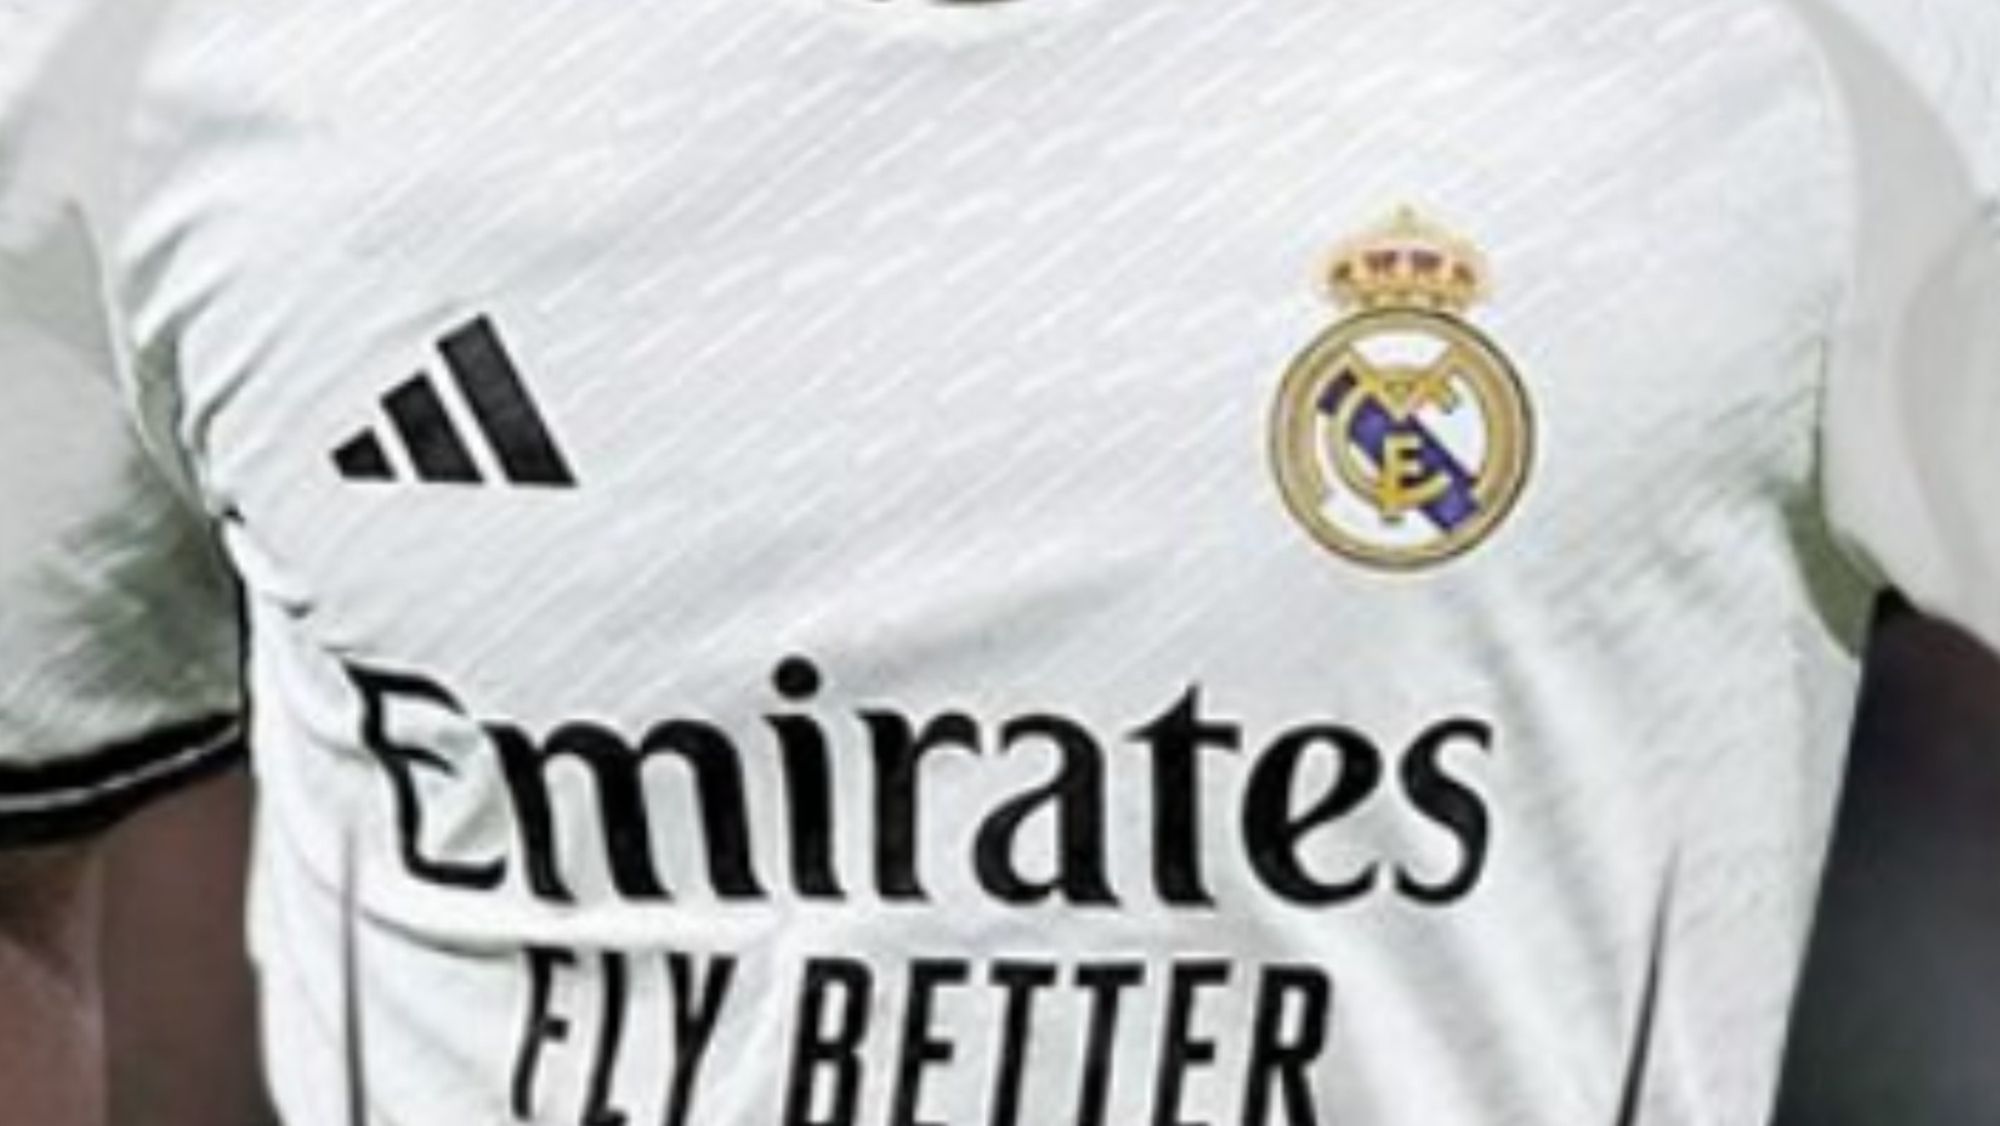 La próxima camiseta del Real Madrid para la 2024-25: idéntica a la época de  Beckham